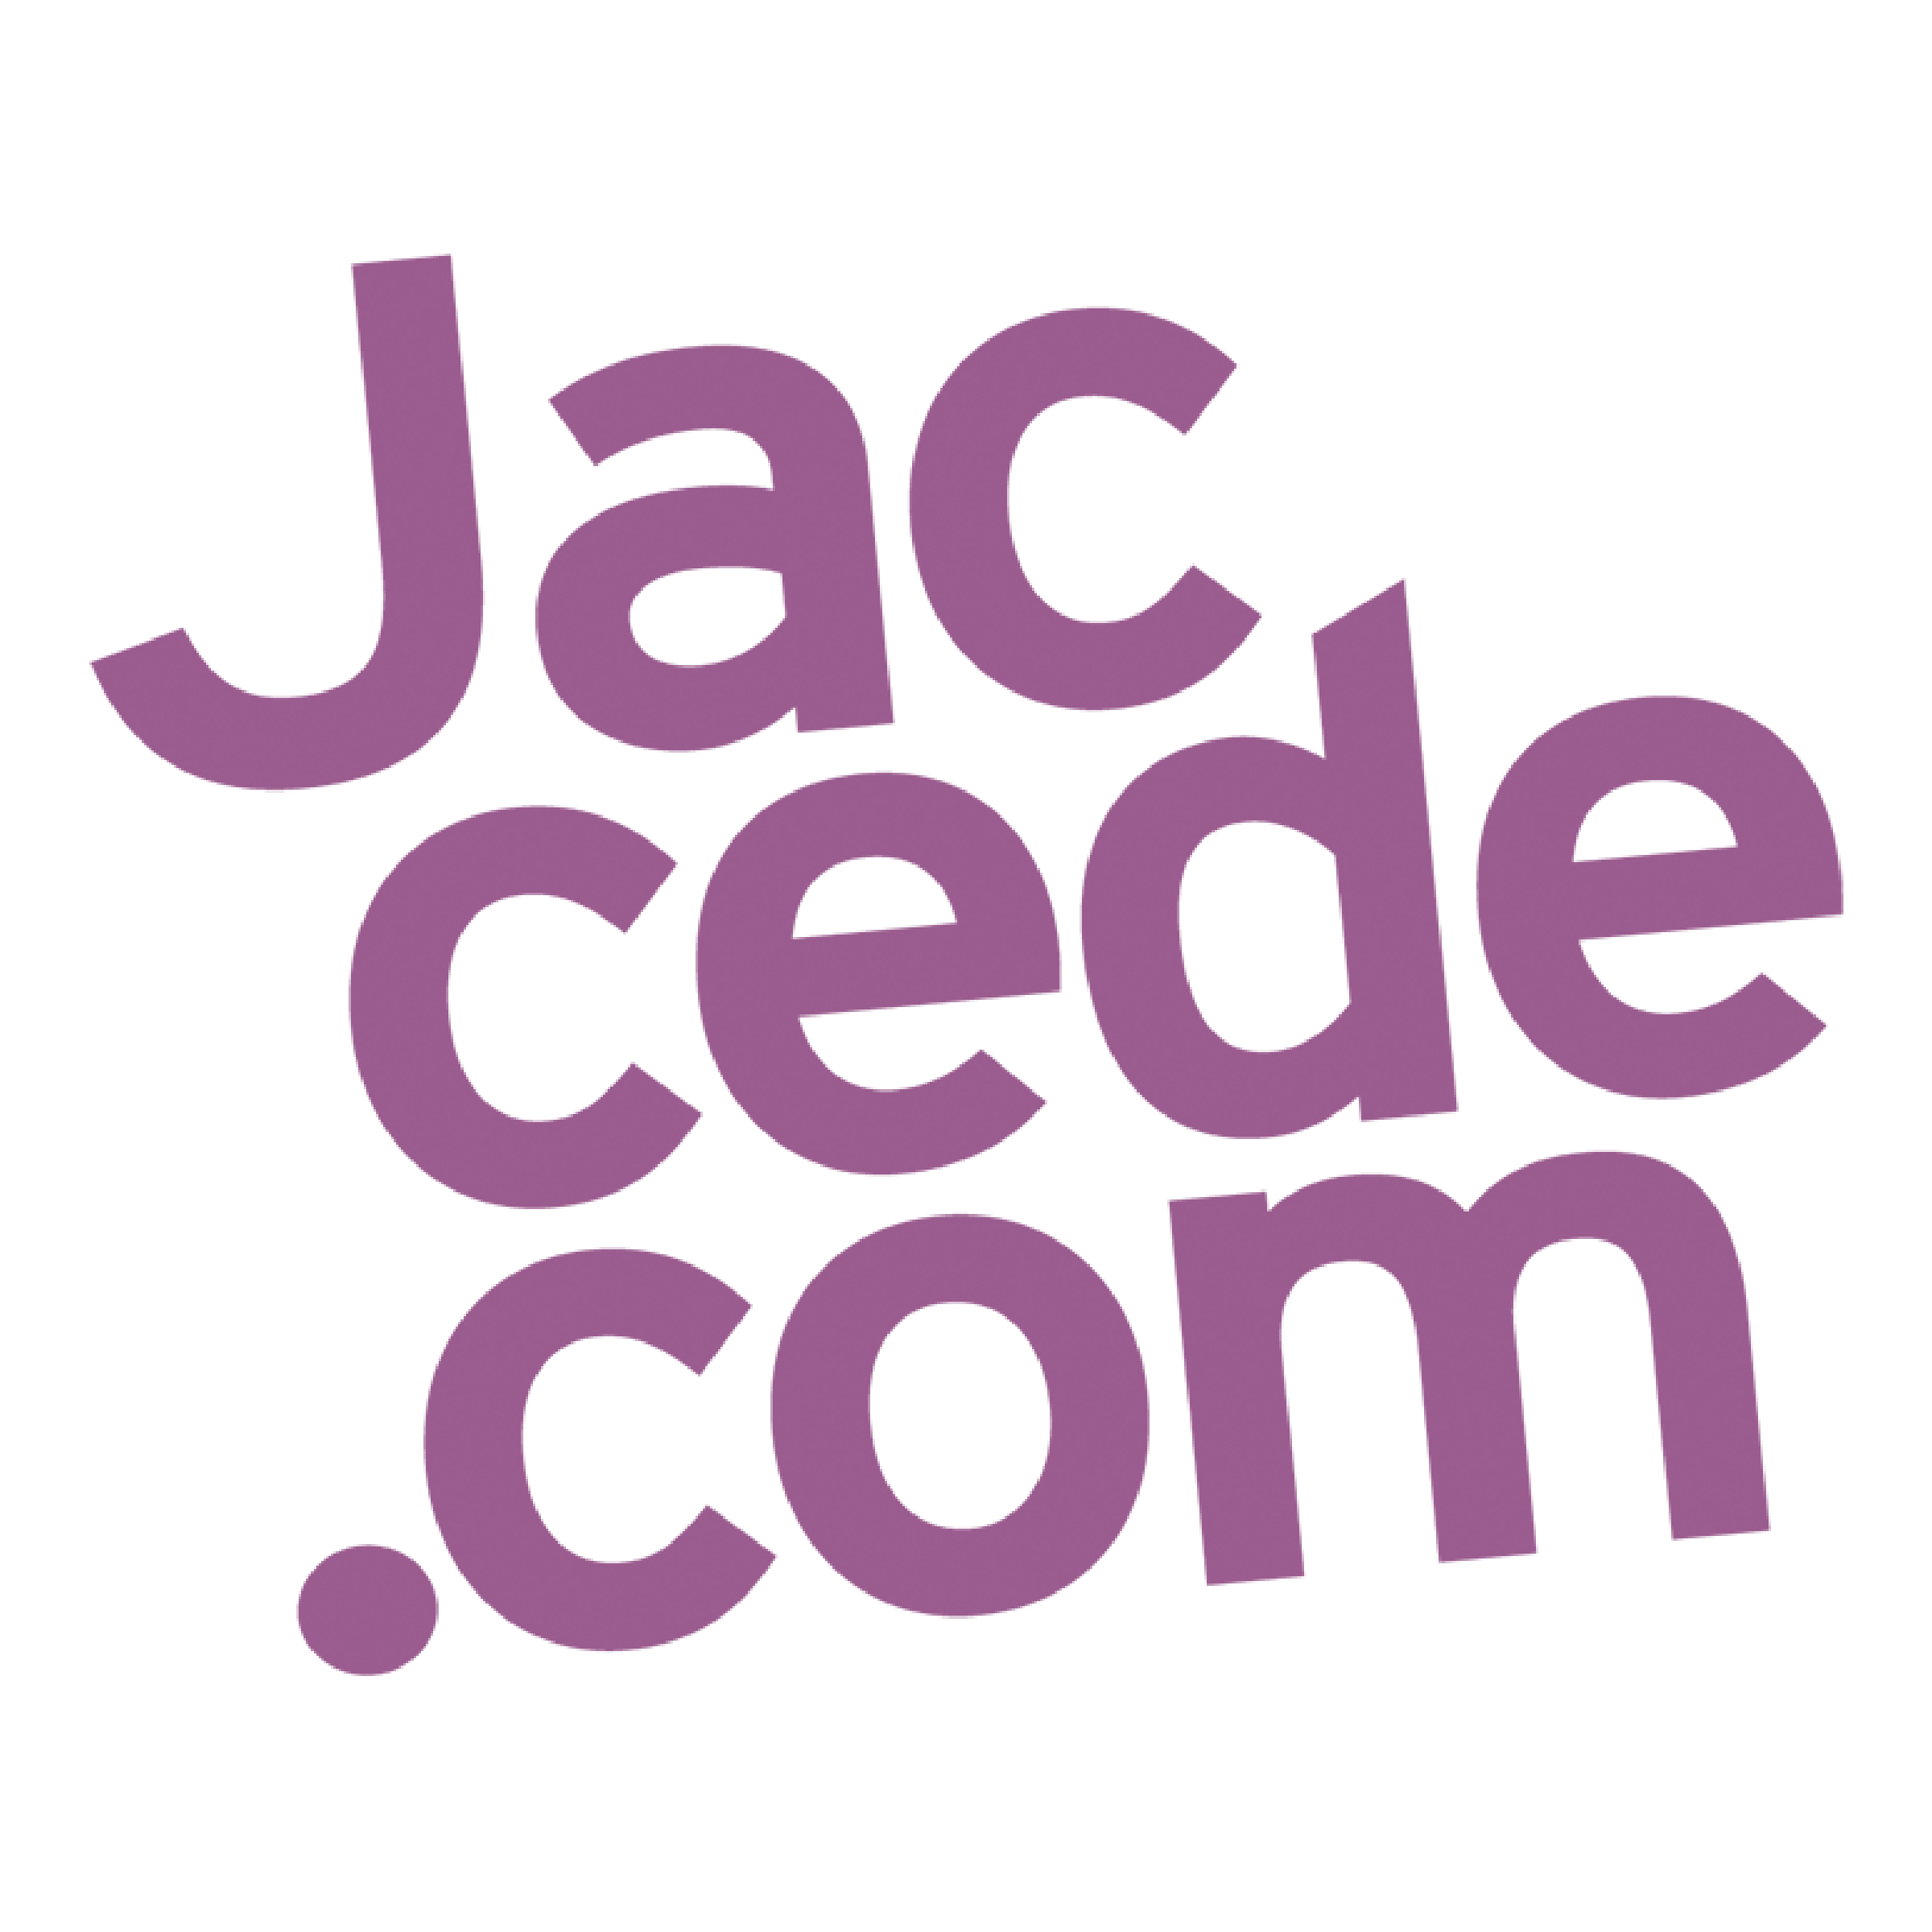 Jaccede.com